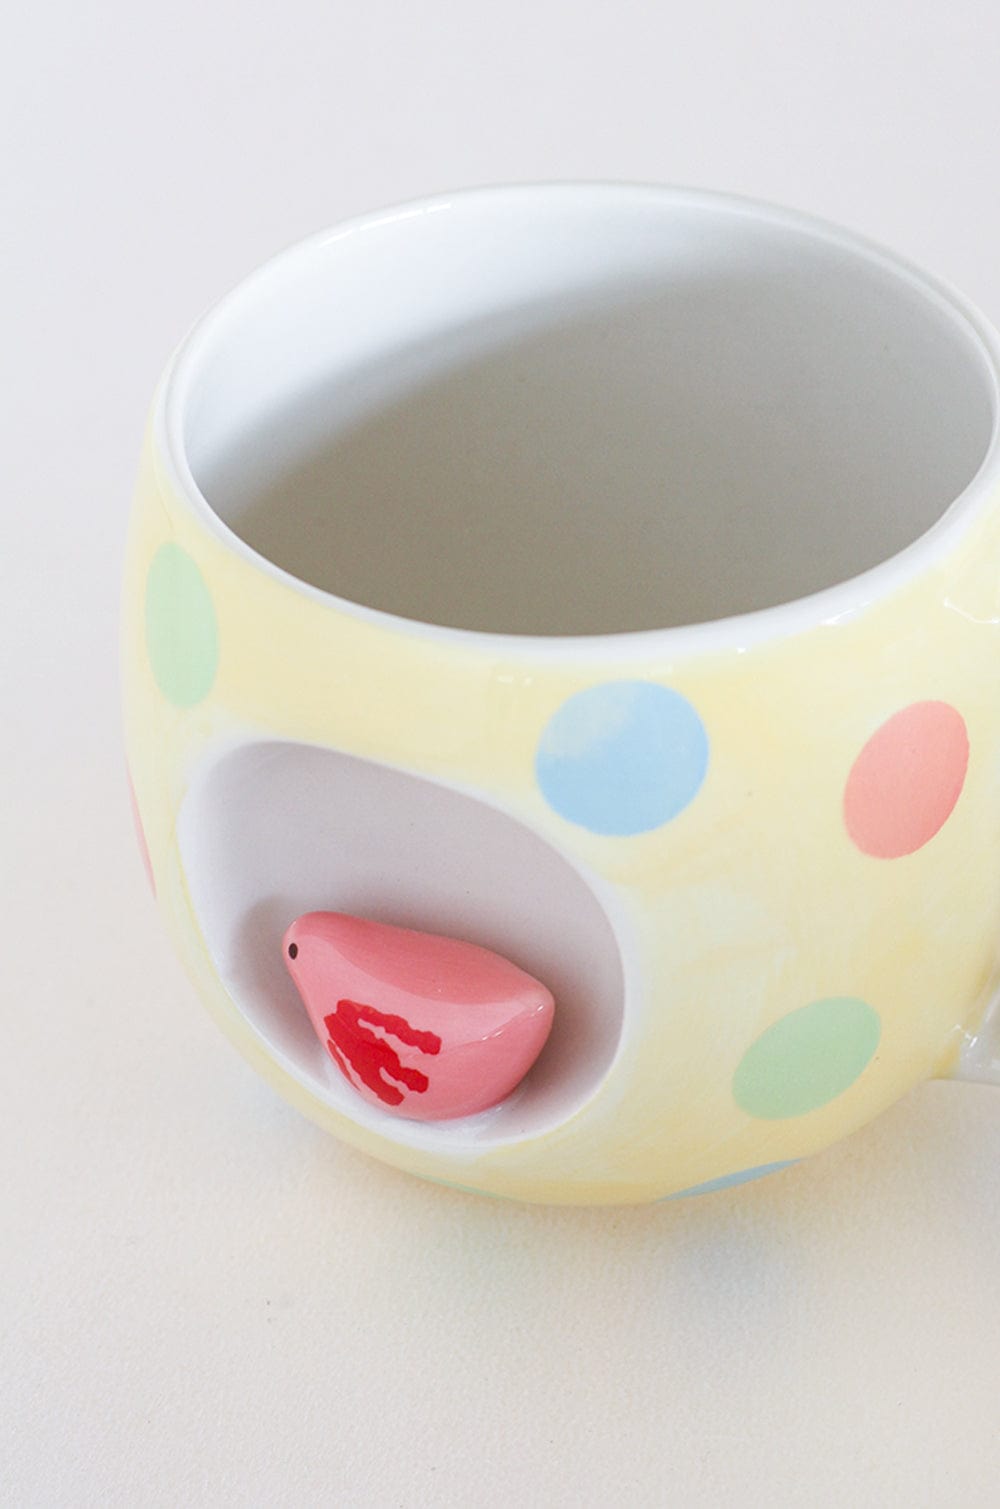 Polka Dot Fish Handpainted Ceramic Mug